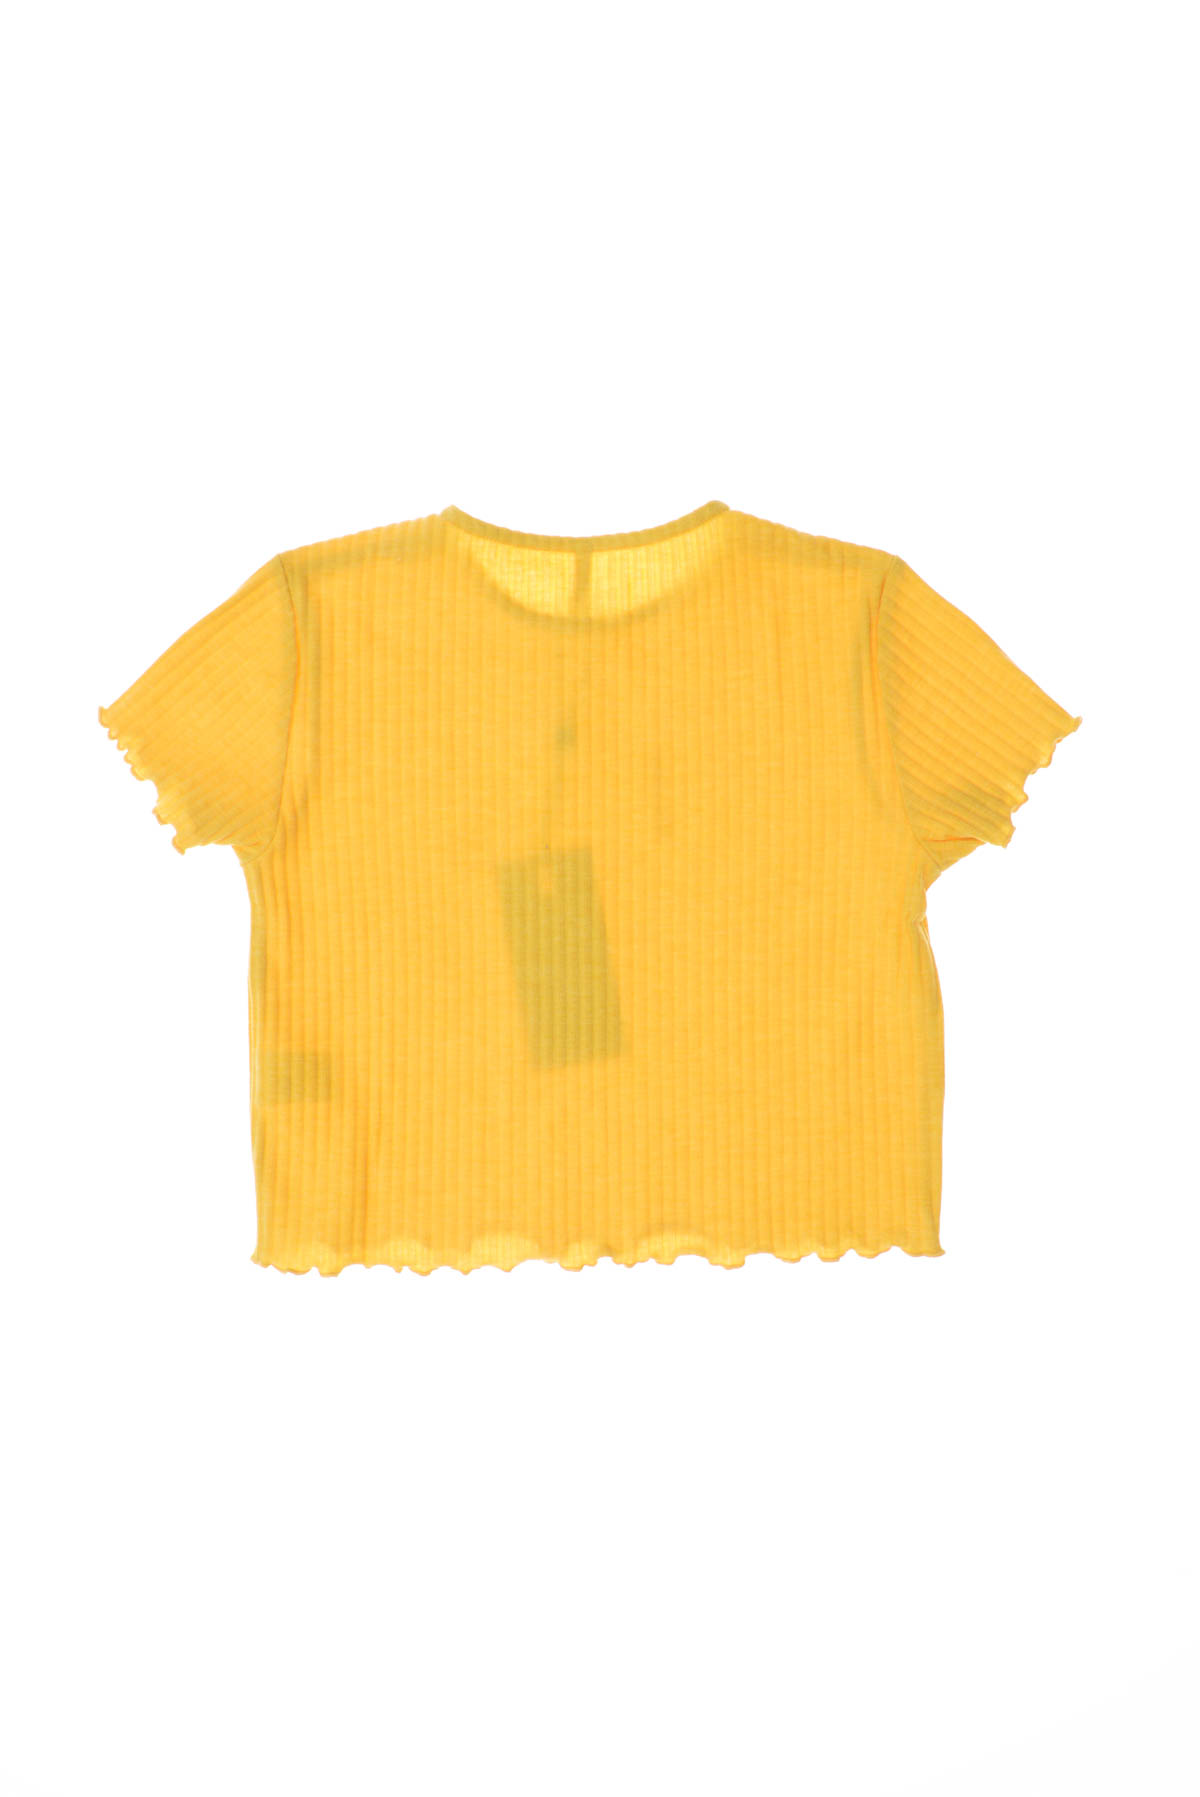 Girls' t-shirt - KIDS ONLY - 4